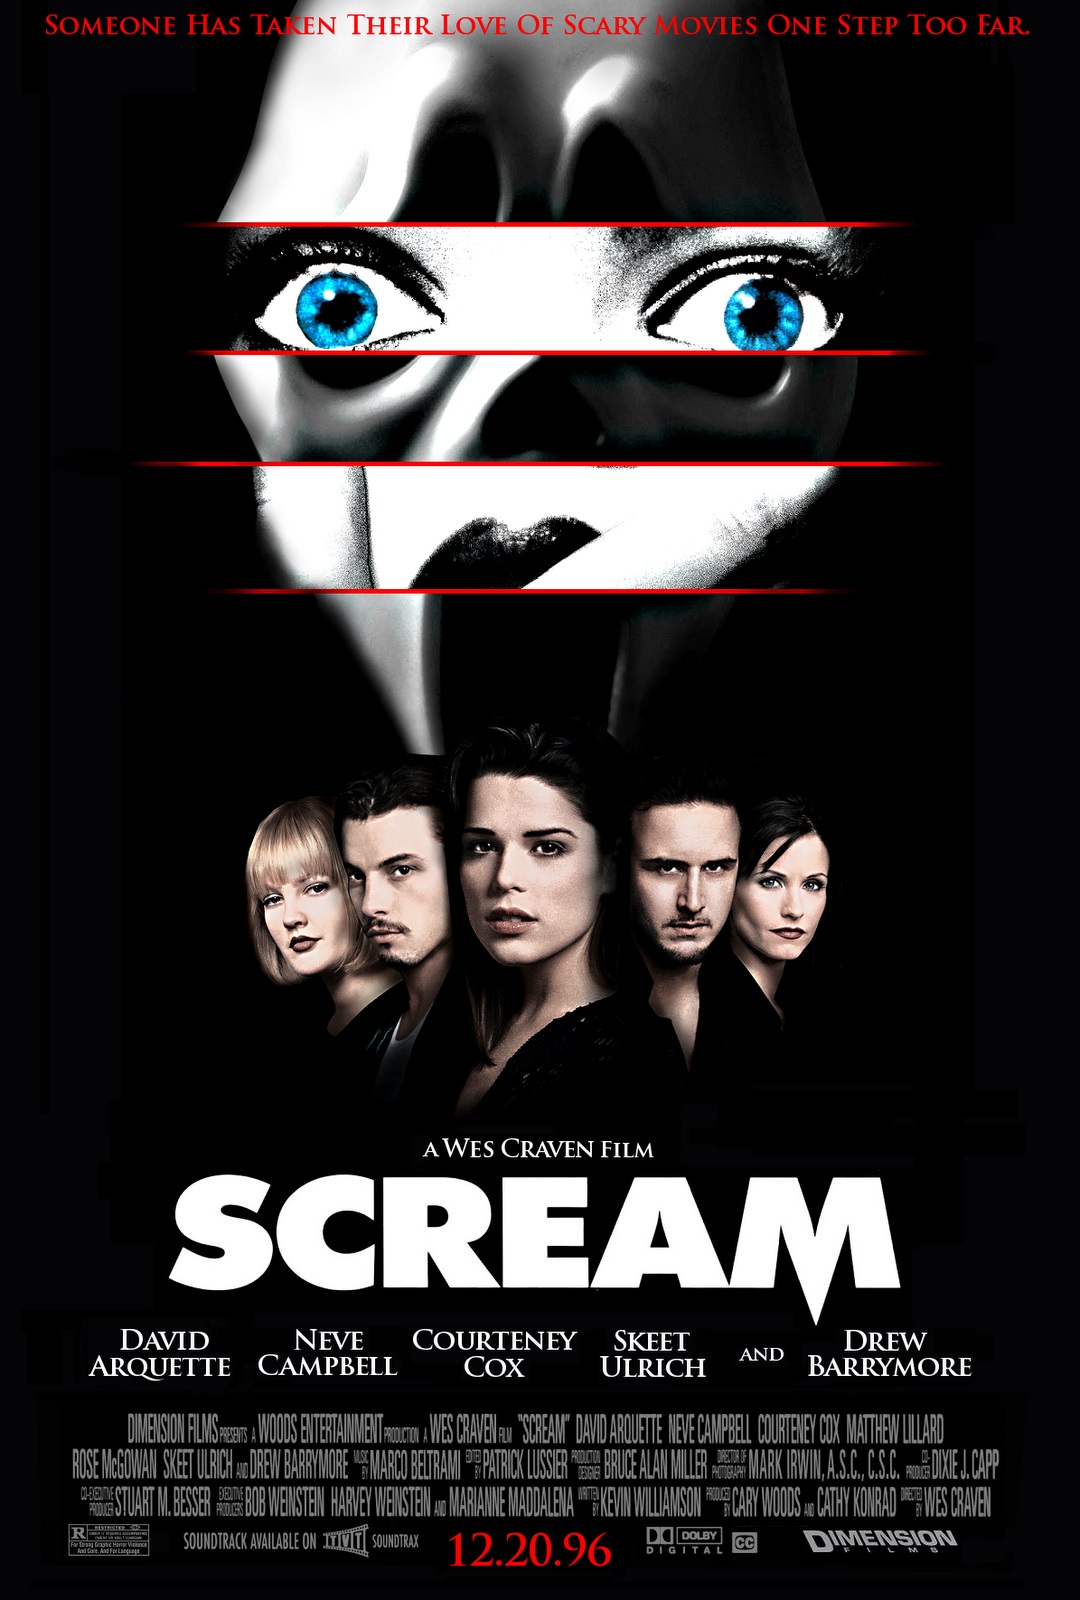 Scream (1996 film) - Wikipedia